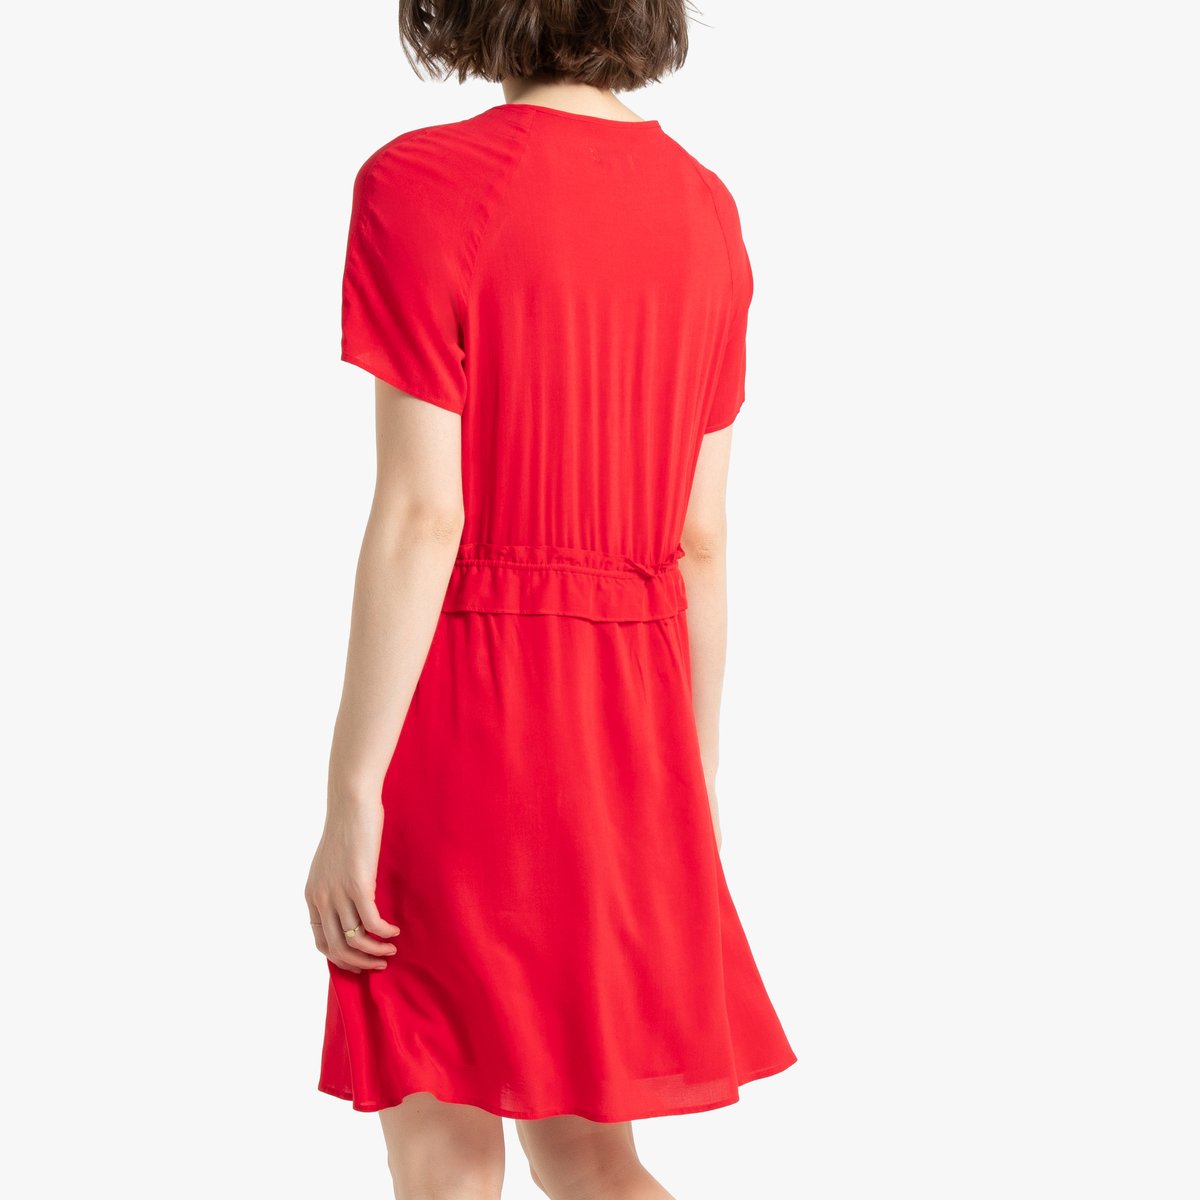 Платье La Redoute С коротким рукавом 42 (FR) - 48 (RUS) красный, размер 42 (FR) - 48 (RUS) С коротким рукавом 42 (FR) - 48 (RUS) красный - фото 3